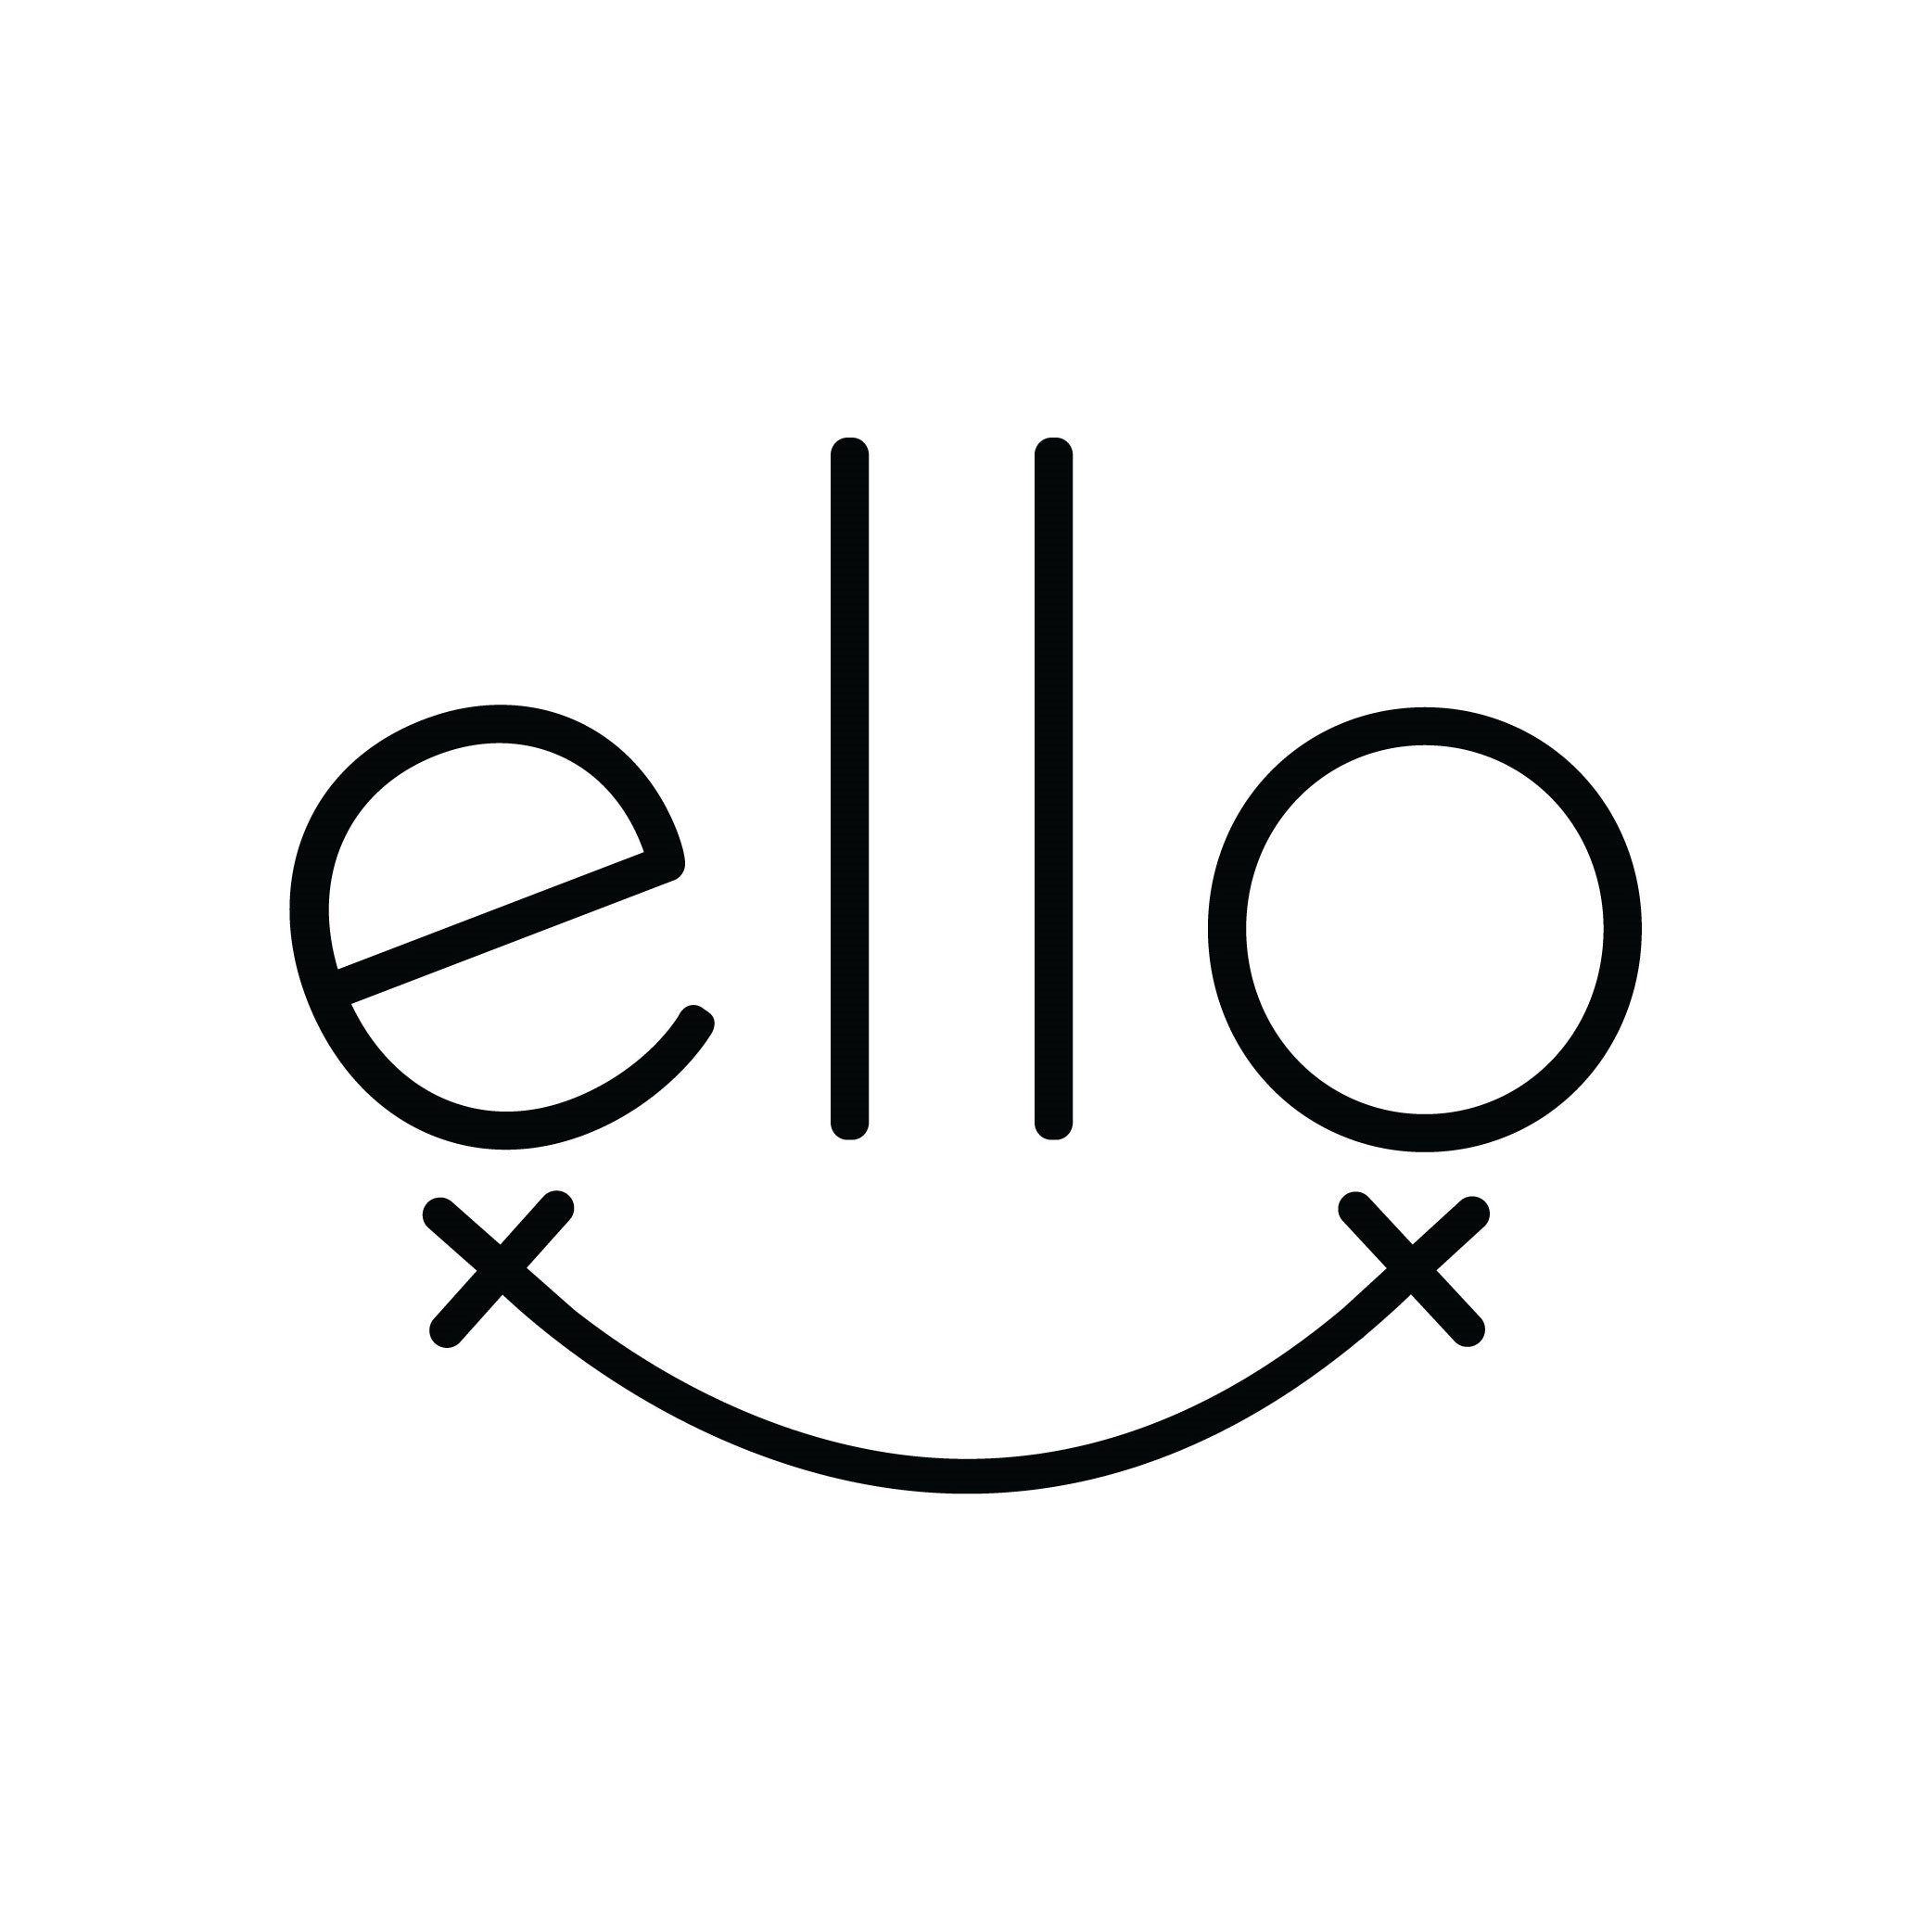 Trademark Logo ELLO